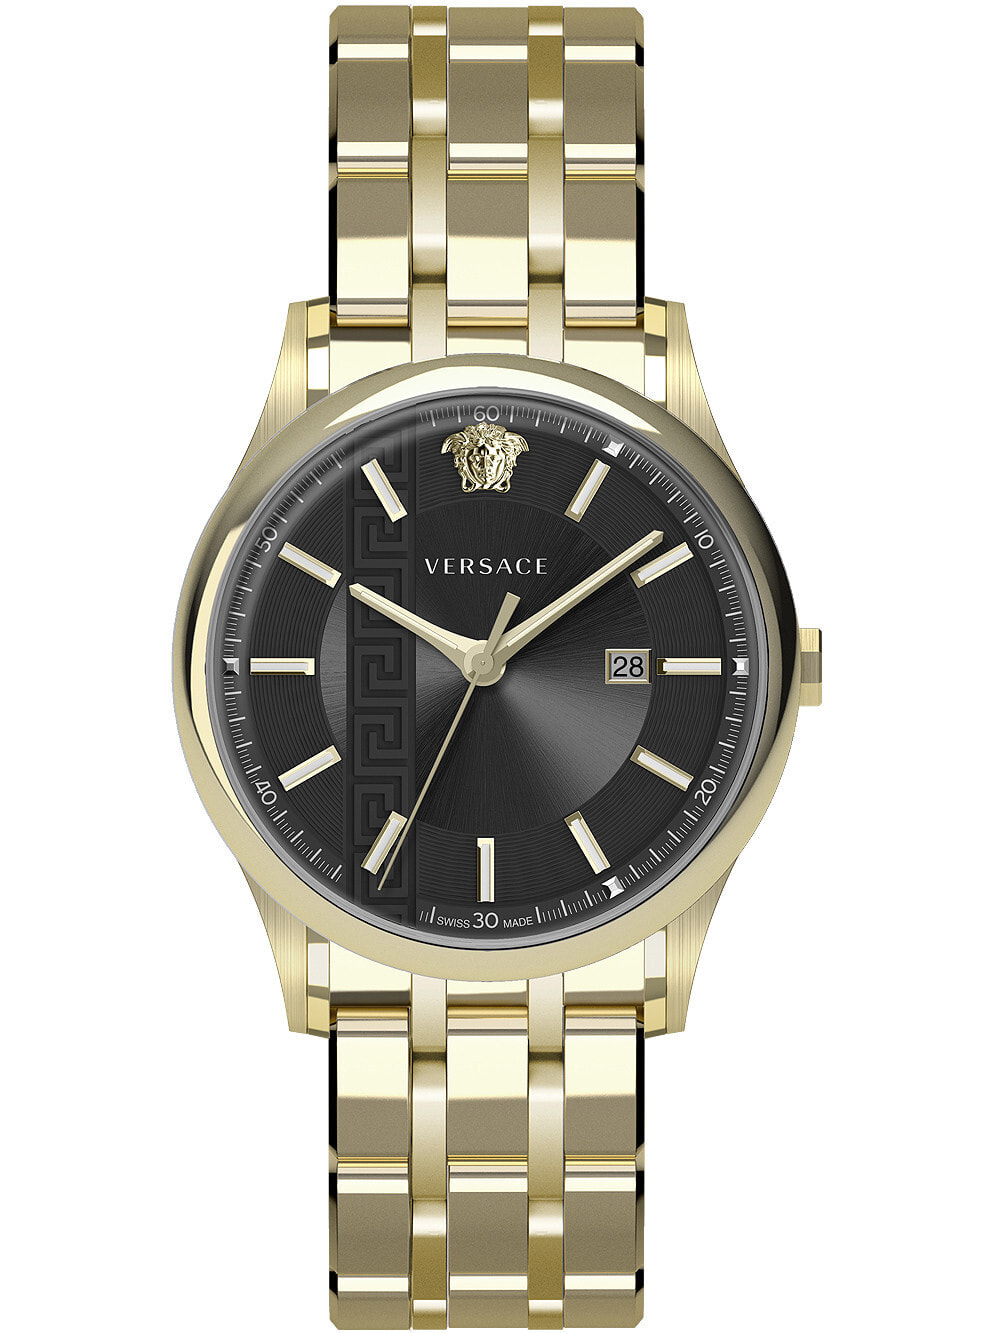 Мужские наручные часы с золотистым браслетом Versace VE4A00820 Aiakos mens 44mm 5ATM